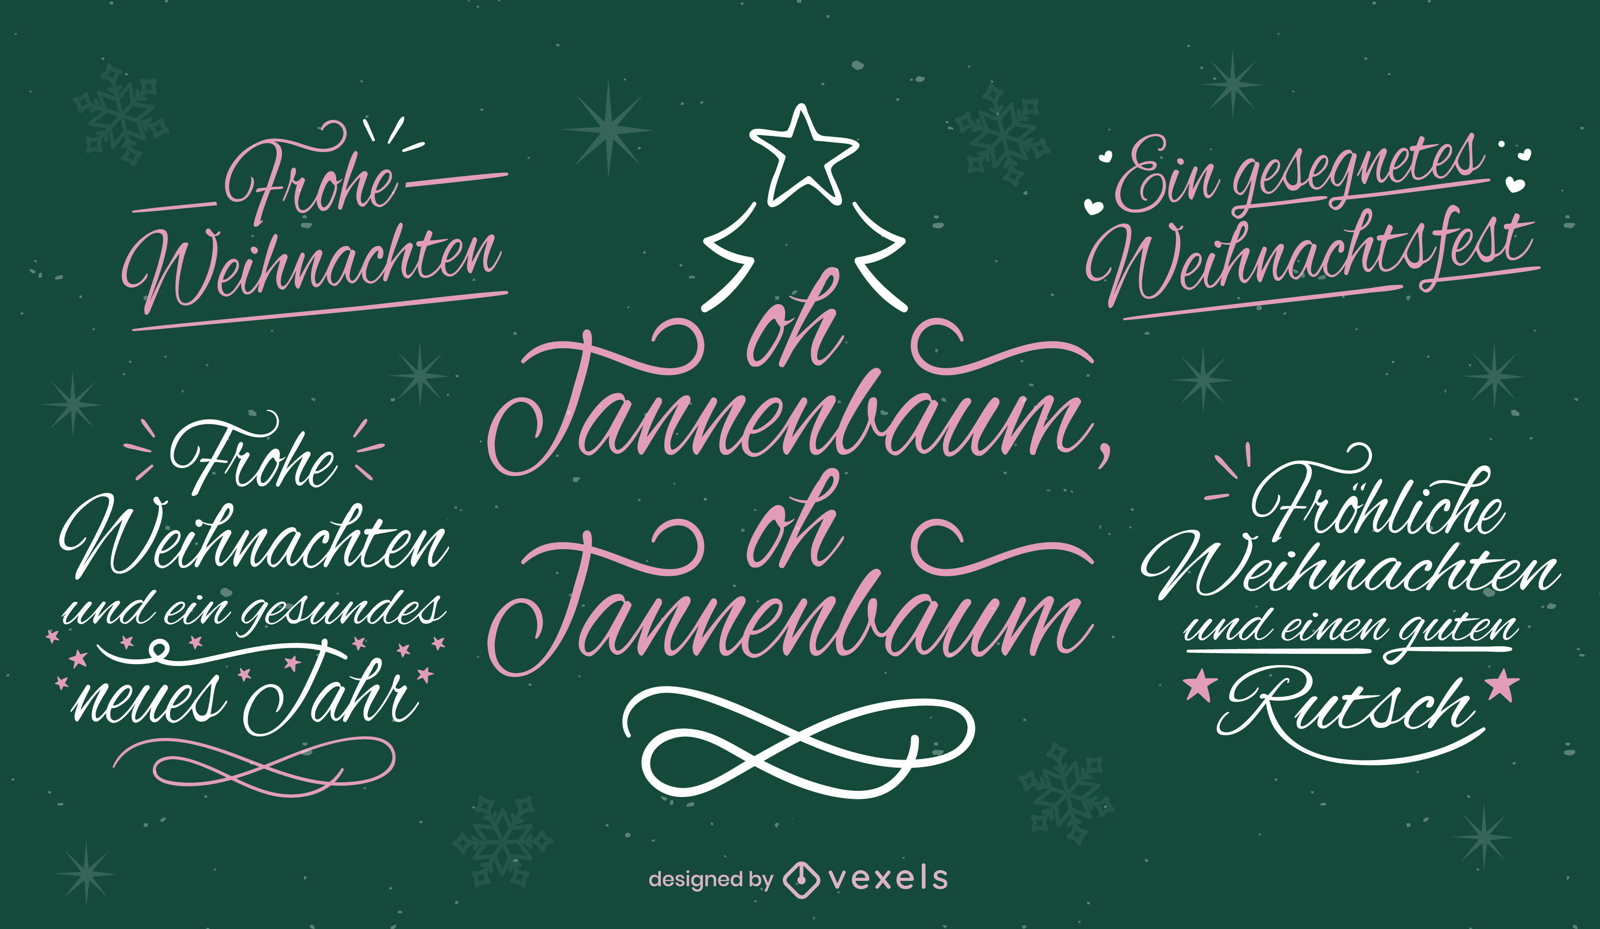 Christmas letterings in german